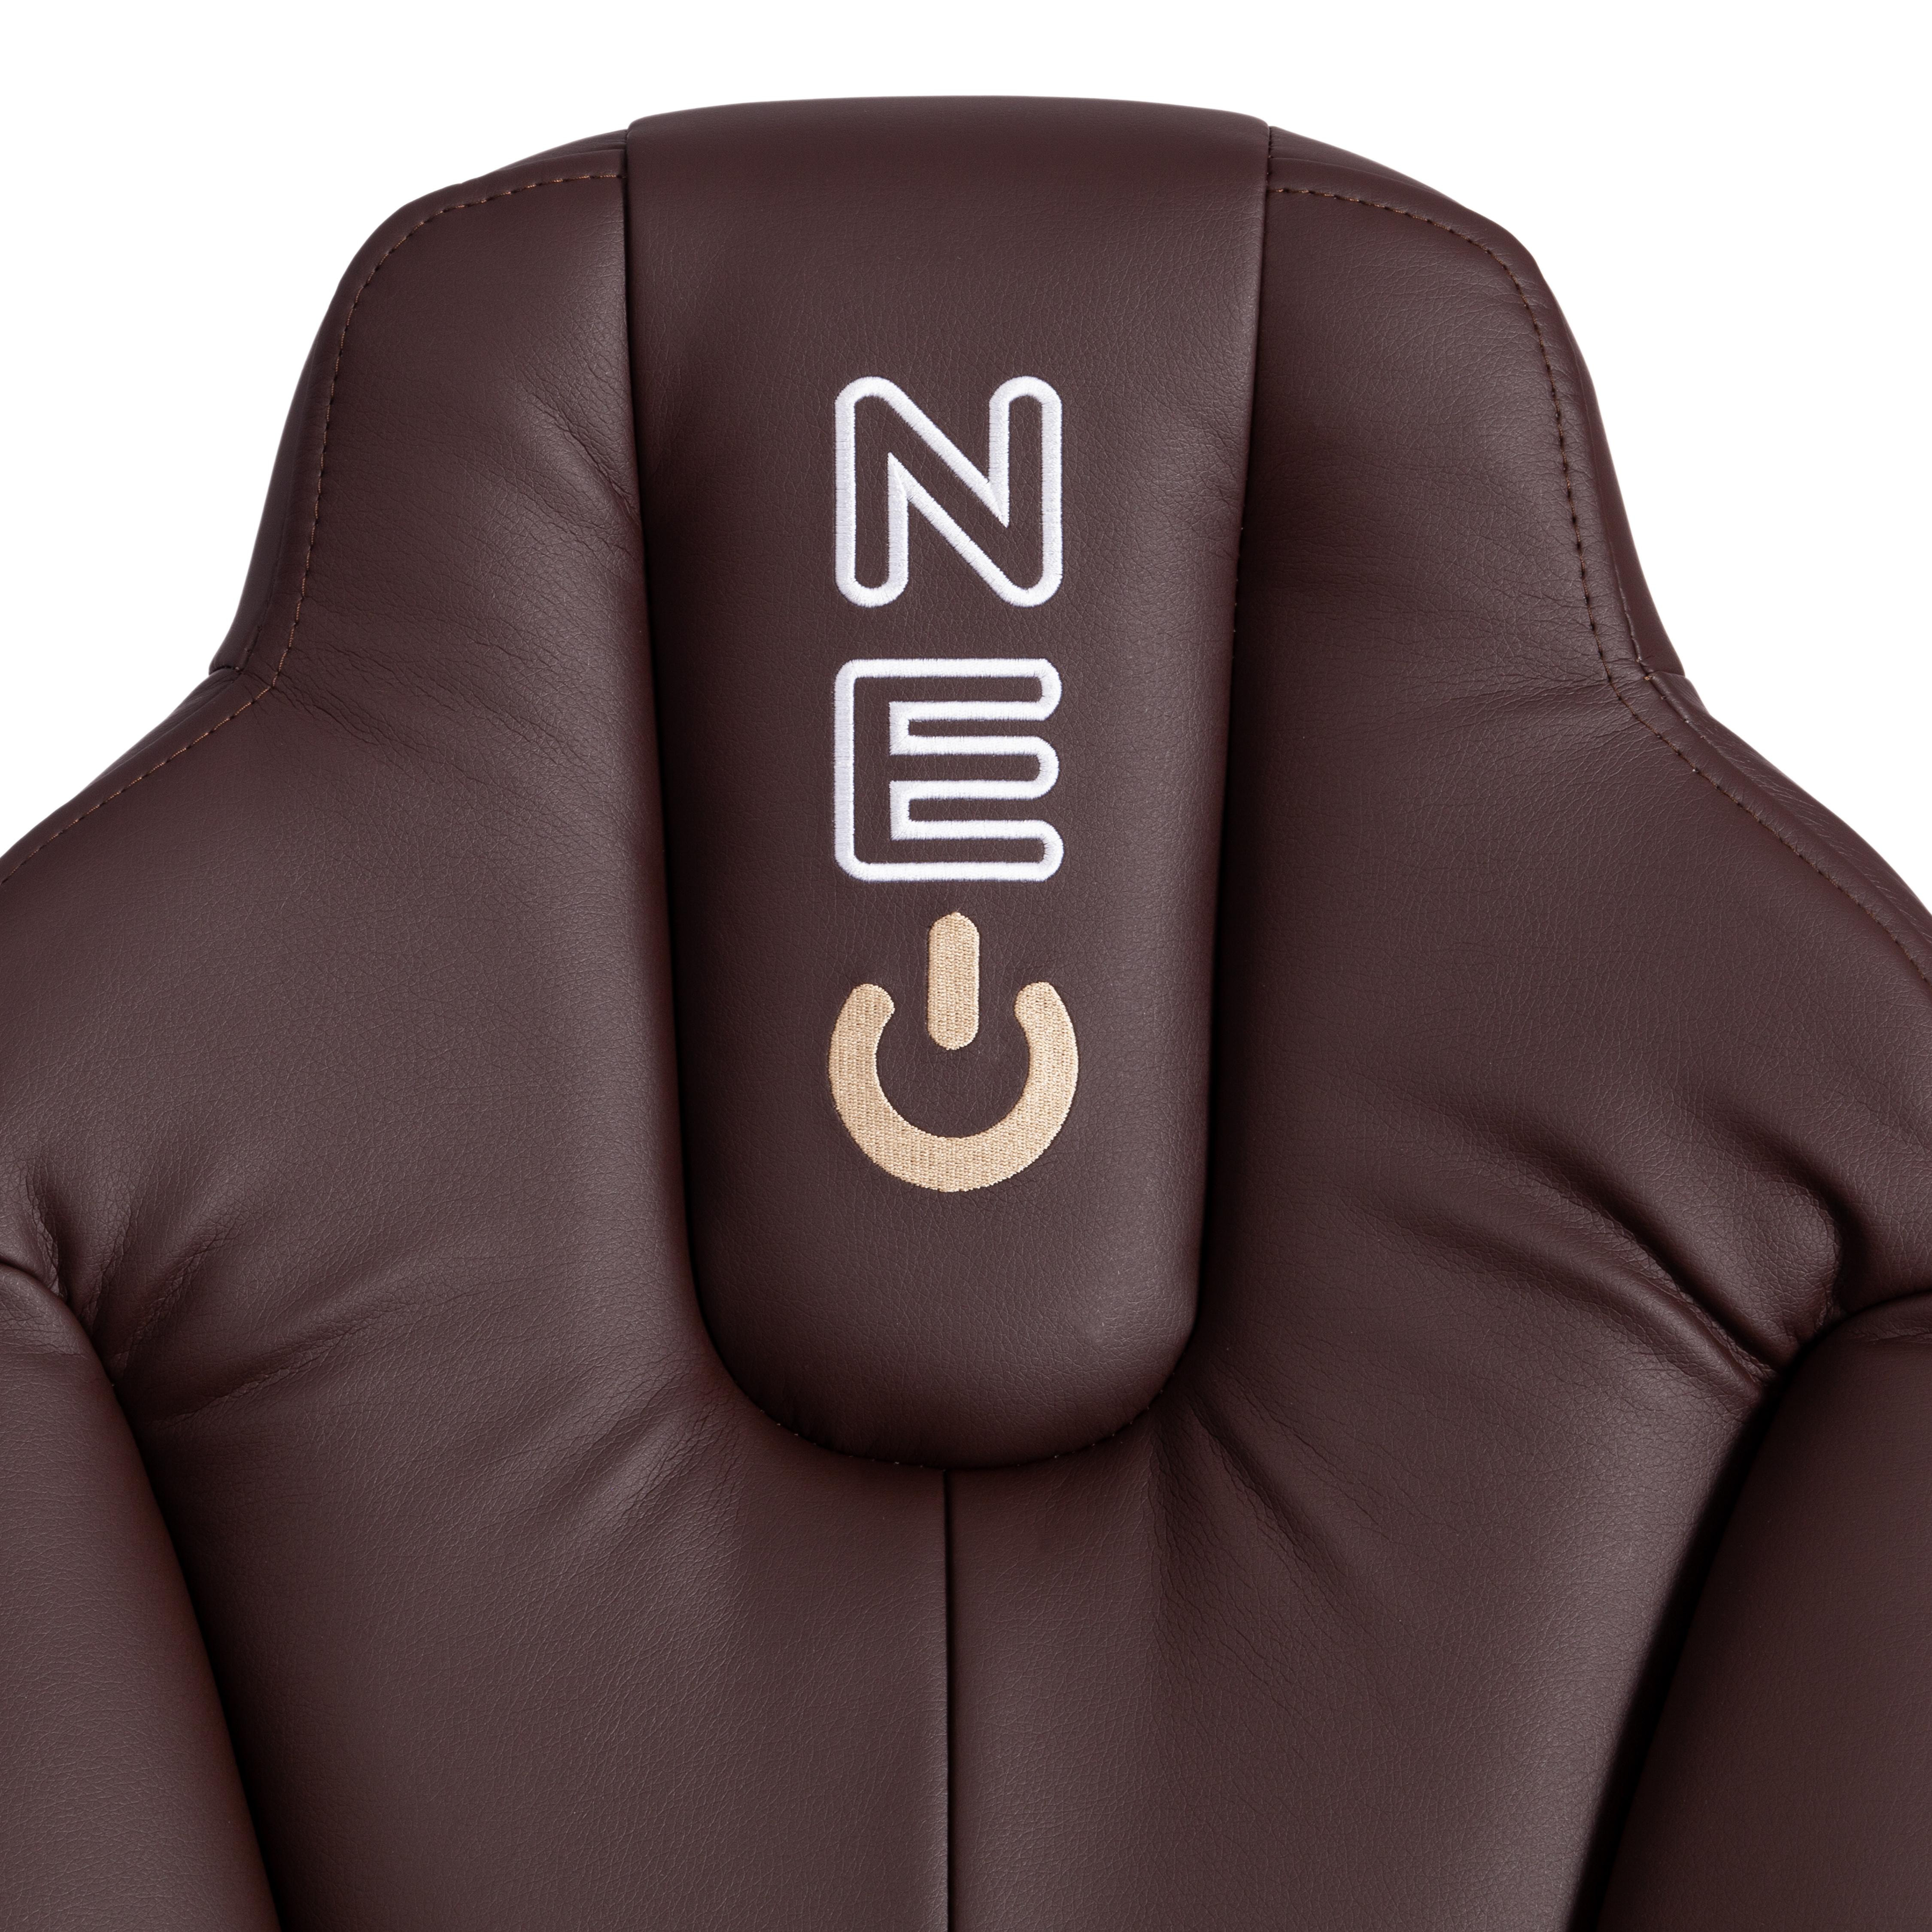 Кресло NEO 2 (22) кож/зам, коричневый, 36-36